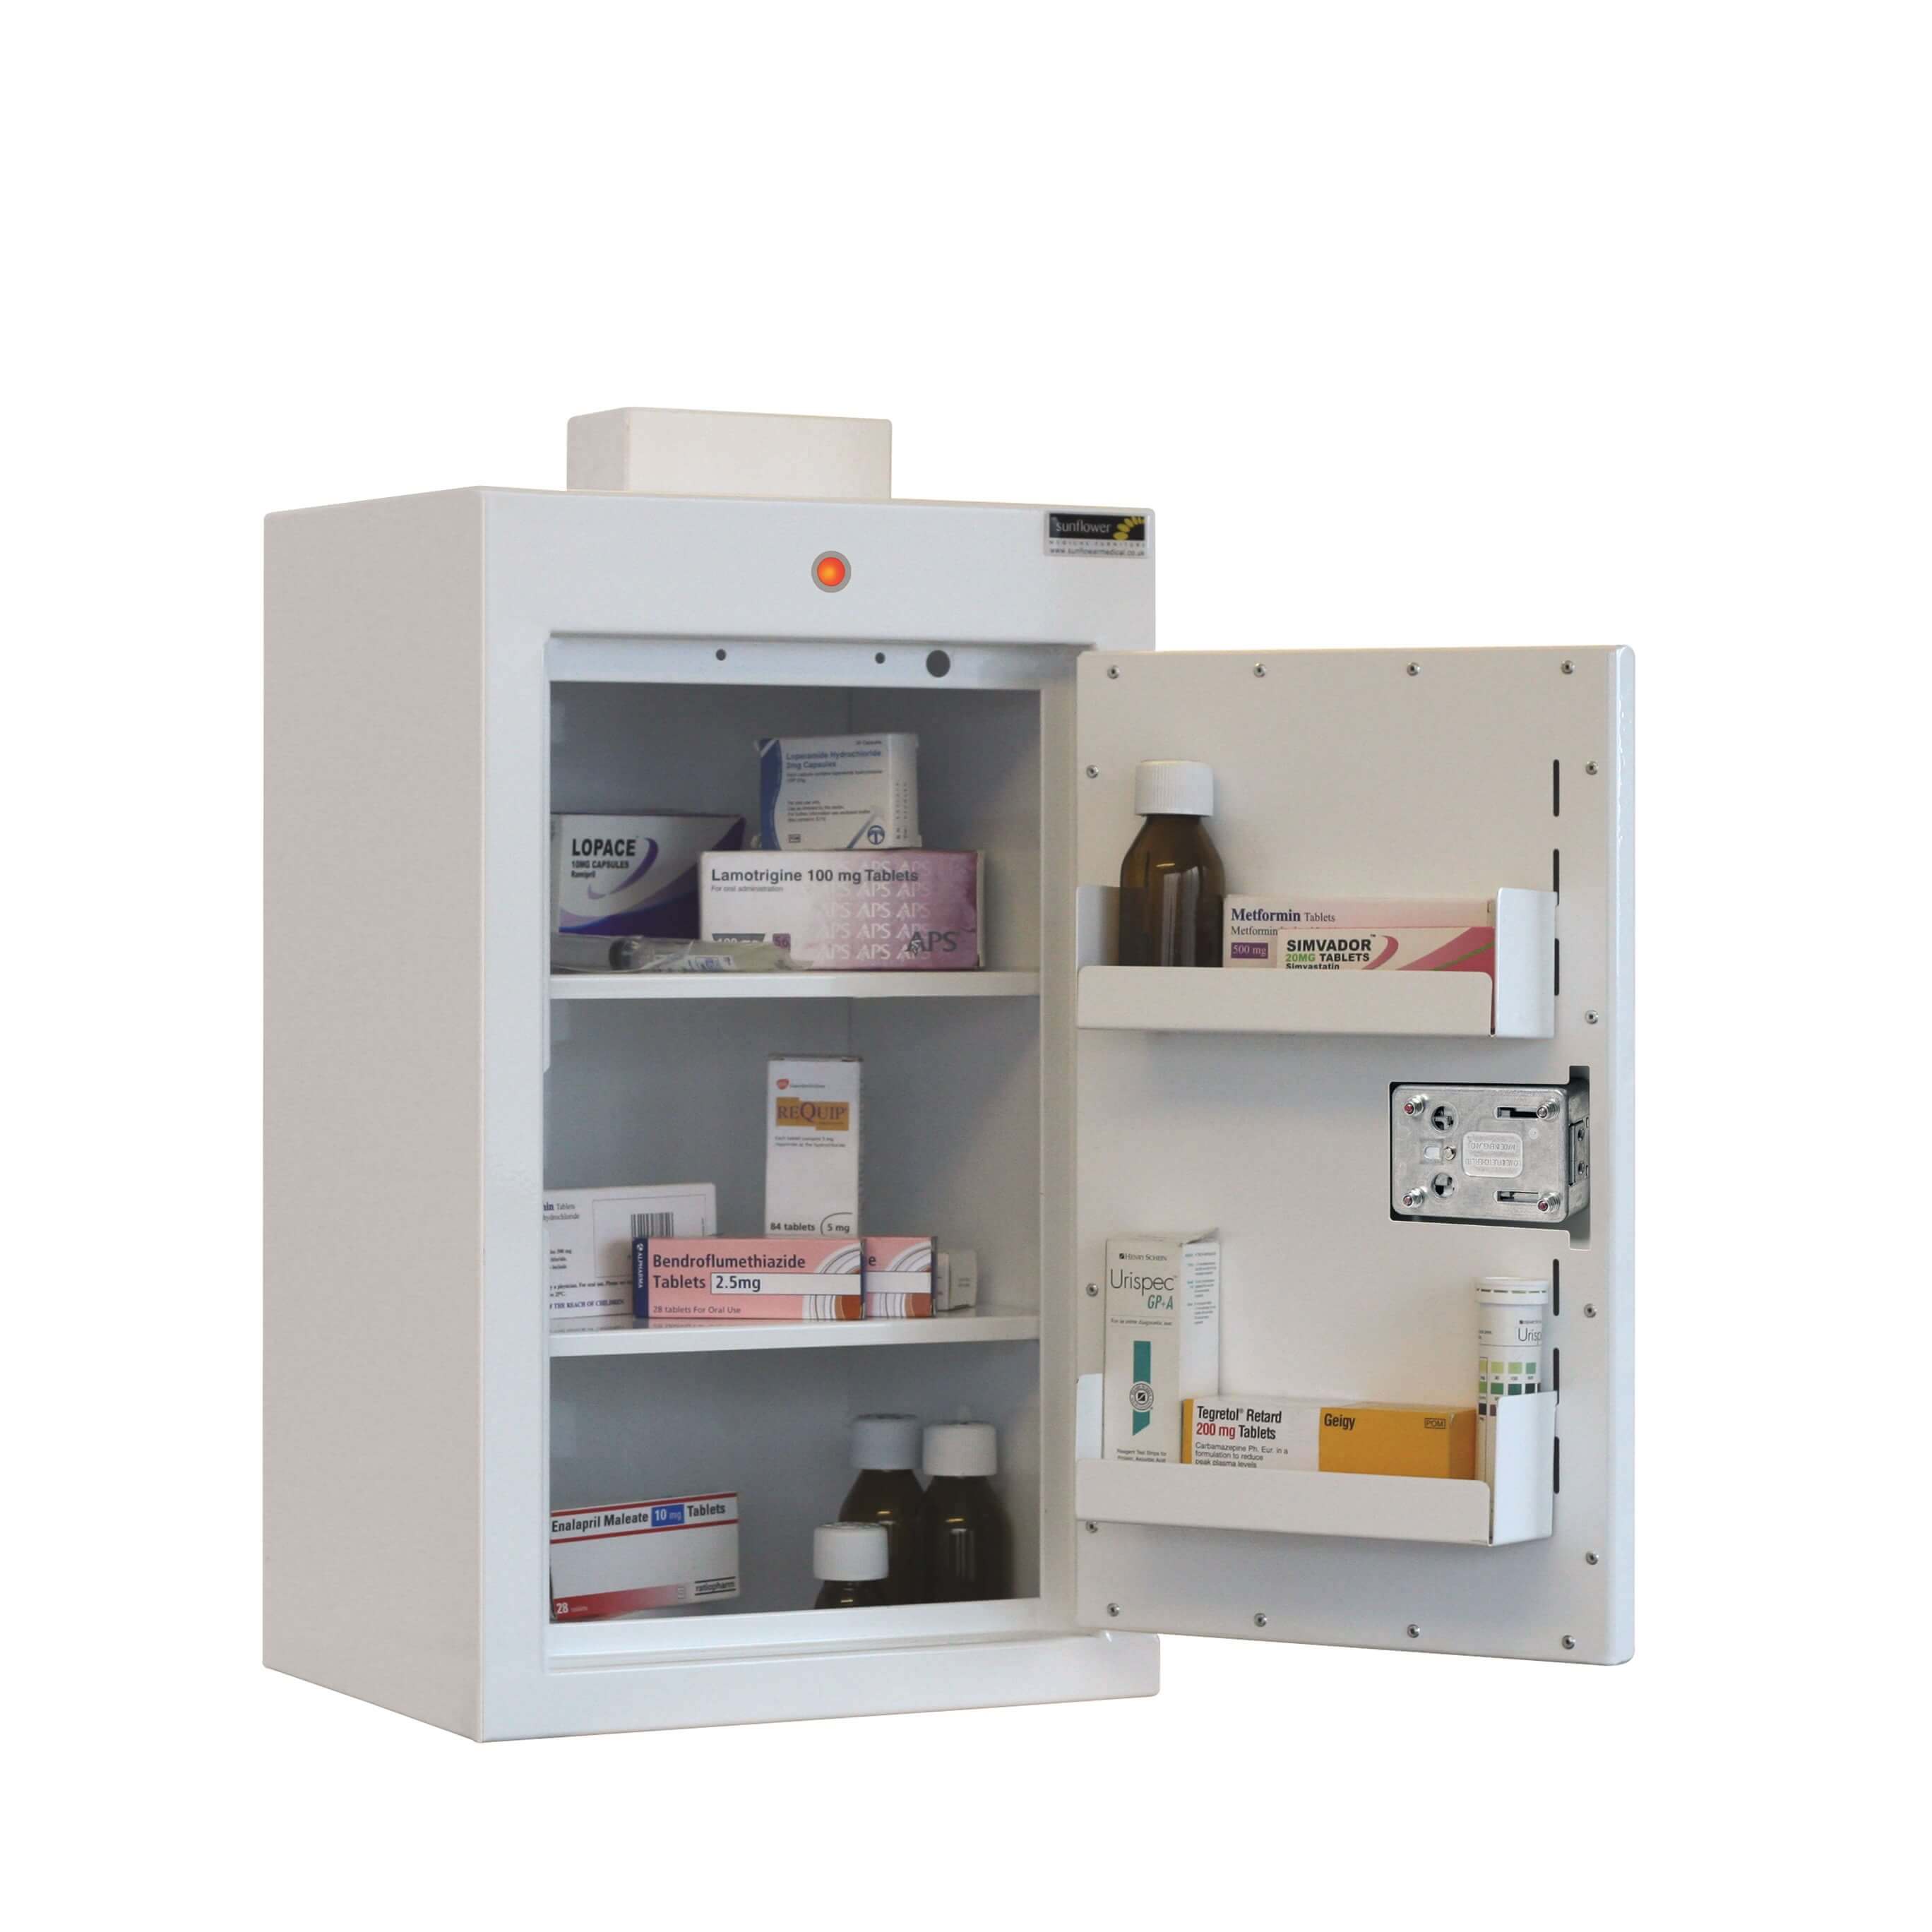 Drug Cabinets